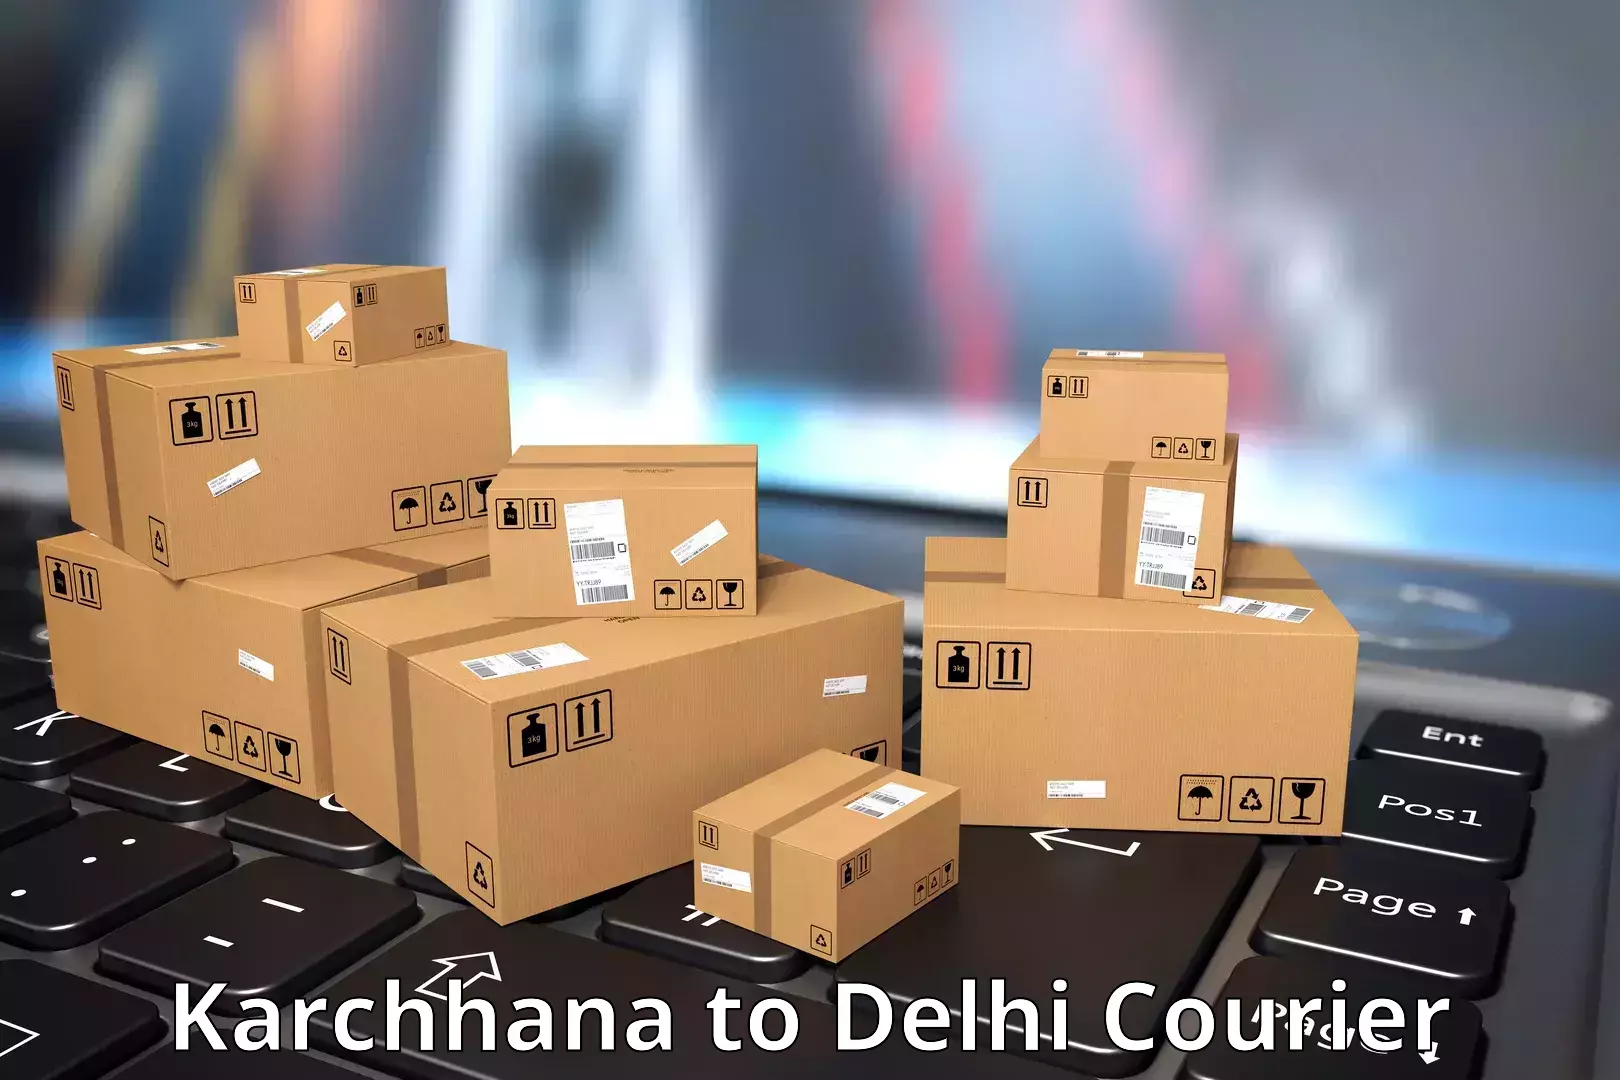 Express logistics Karchhana to Delhi